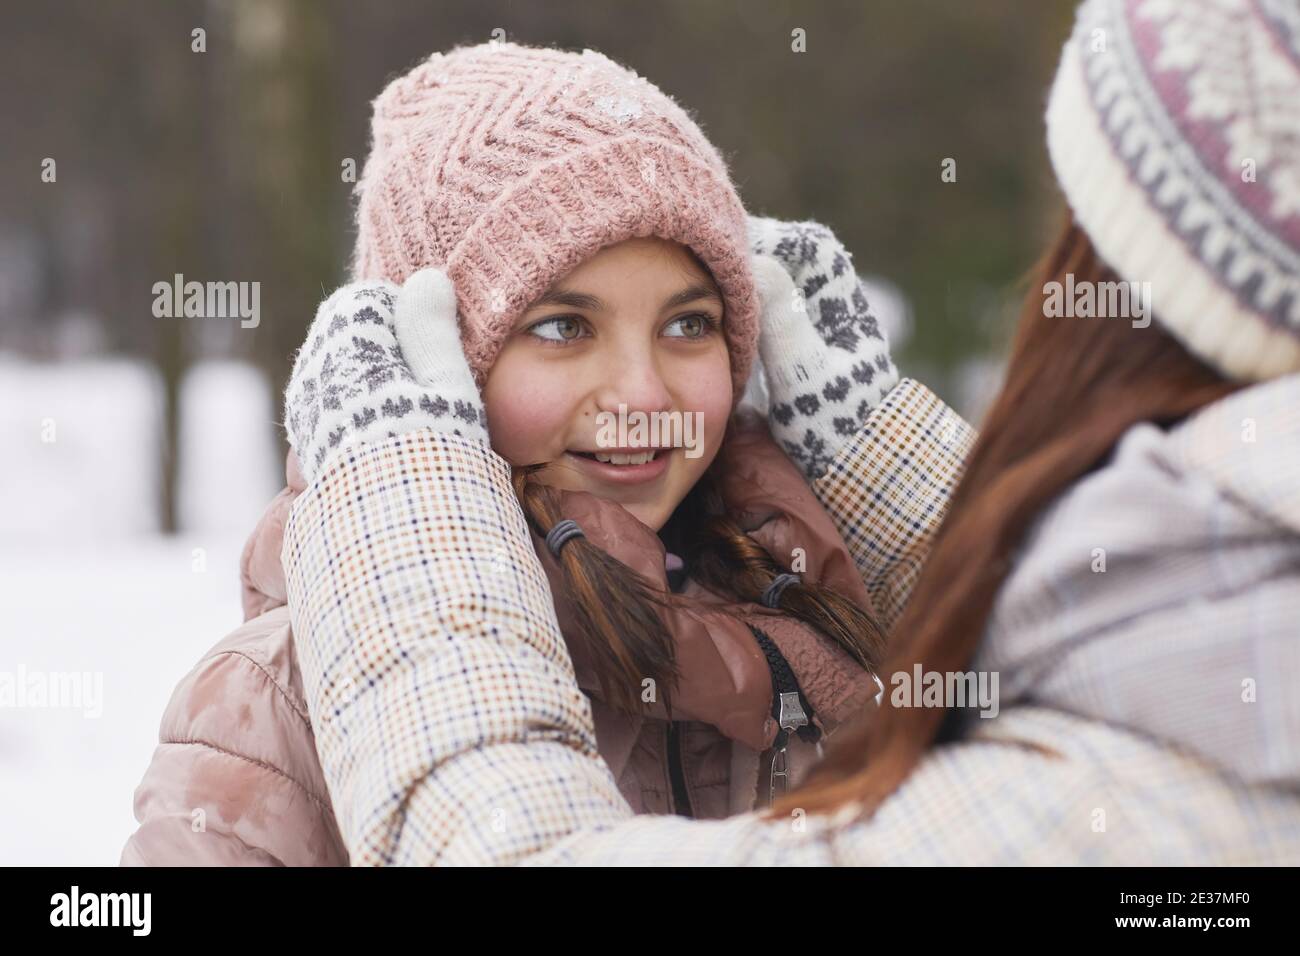 Nahaufnahme Porträt der fürsorglichen Mutter Anpassung Hut auf Queue Mädchen, während Sie gemeinsam im Winter im Freien spazieren gehen Stockfoto